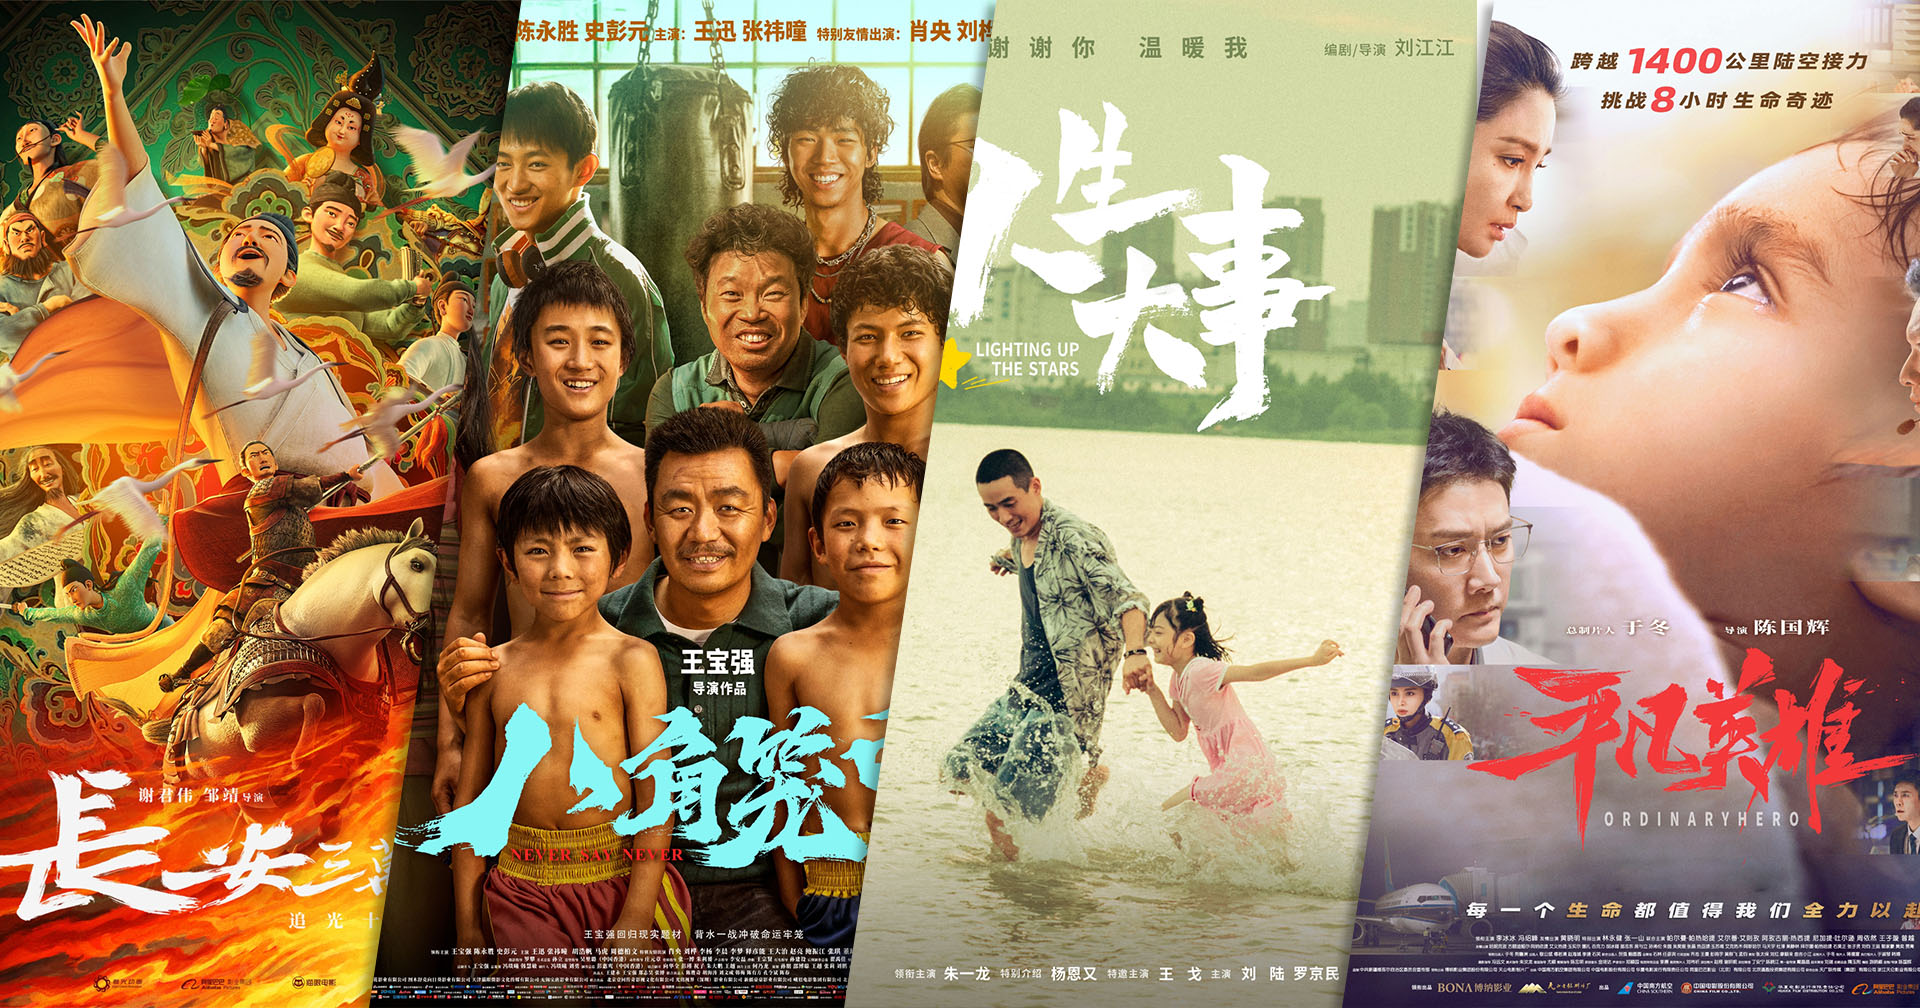 สถานทูตจีน ร่วมกับ เอส เอฟ ชวนดูหนังดีจากแดนมังกร ใน ‘เทศกาลภาพยนตร์จีน ณ กรุงเทพฯ ครั้งที่ 17’